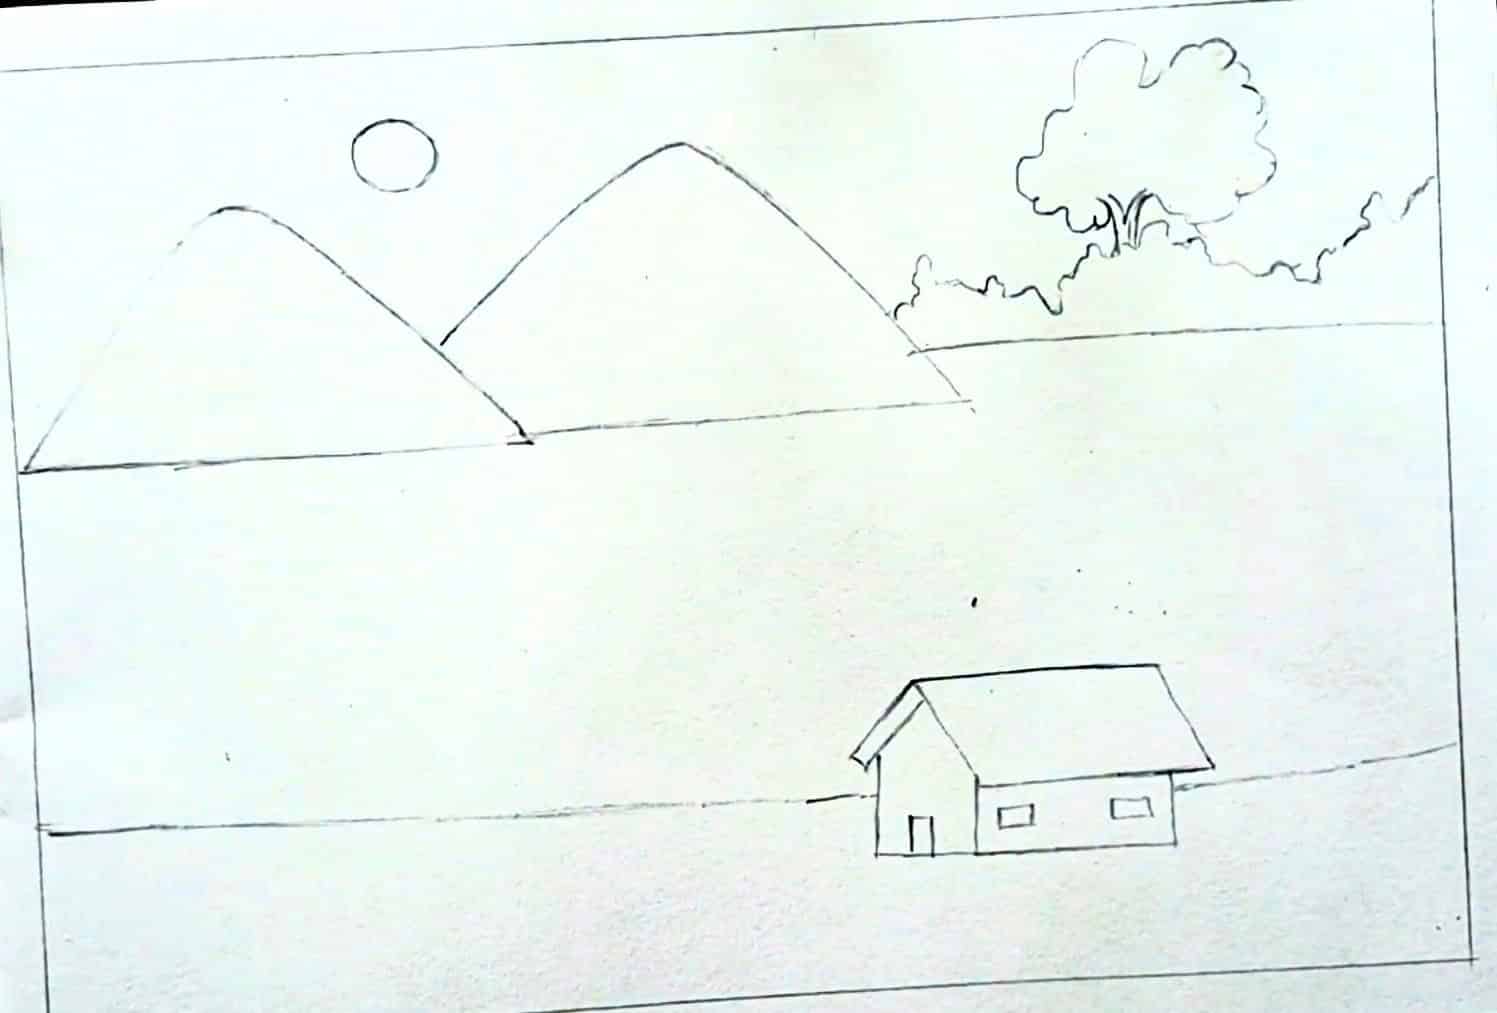 Village Scenery Drawing Idea For Preschoolers